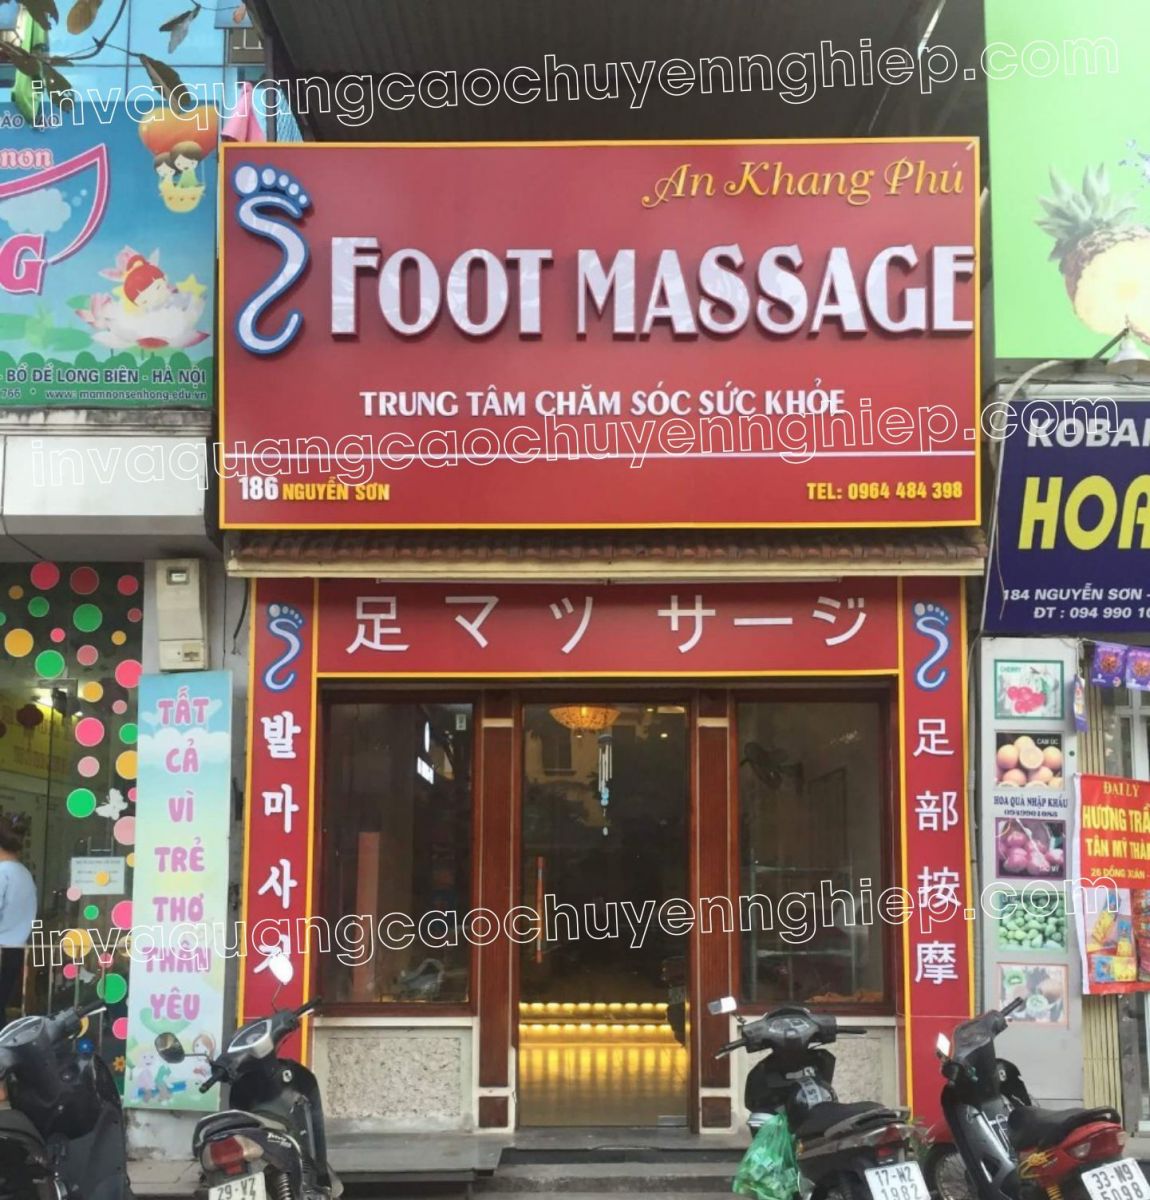 biển quảng cáo chữ nổi mica an khang phú foot massage